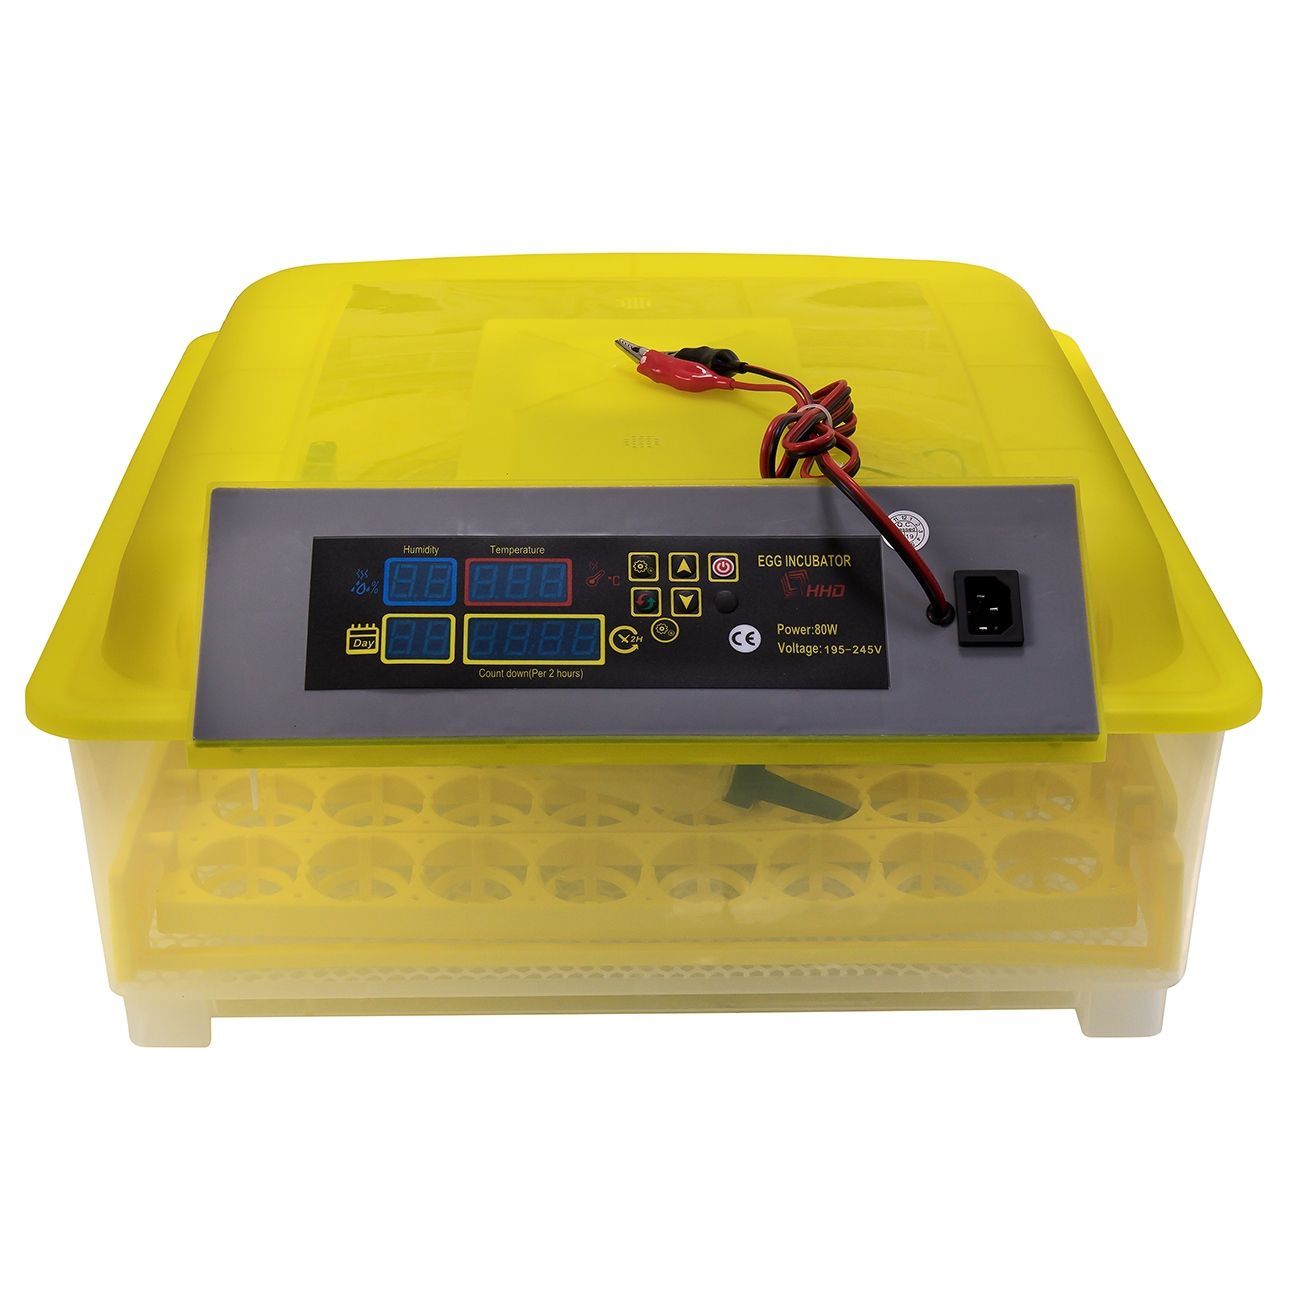 Инкубатор HHD 48, на 48 яиц с автоматическим переворотом и резервным питанием, пластик